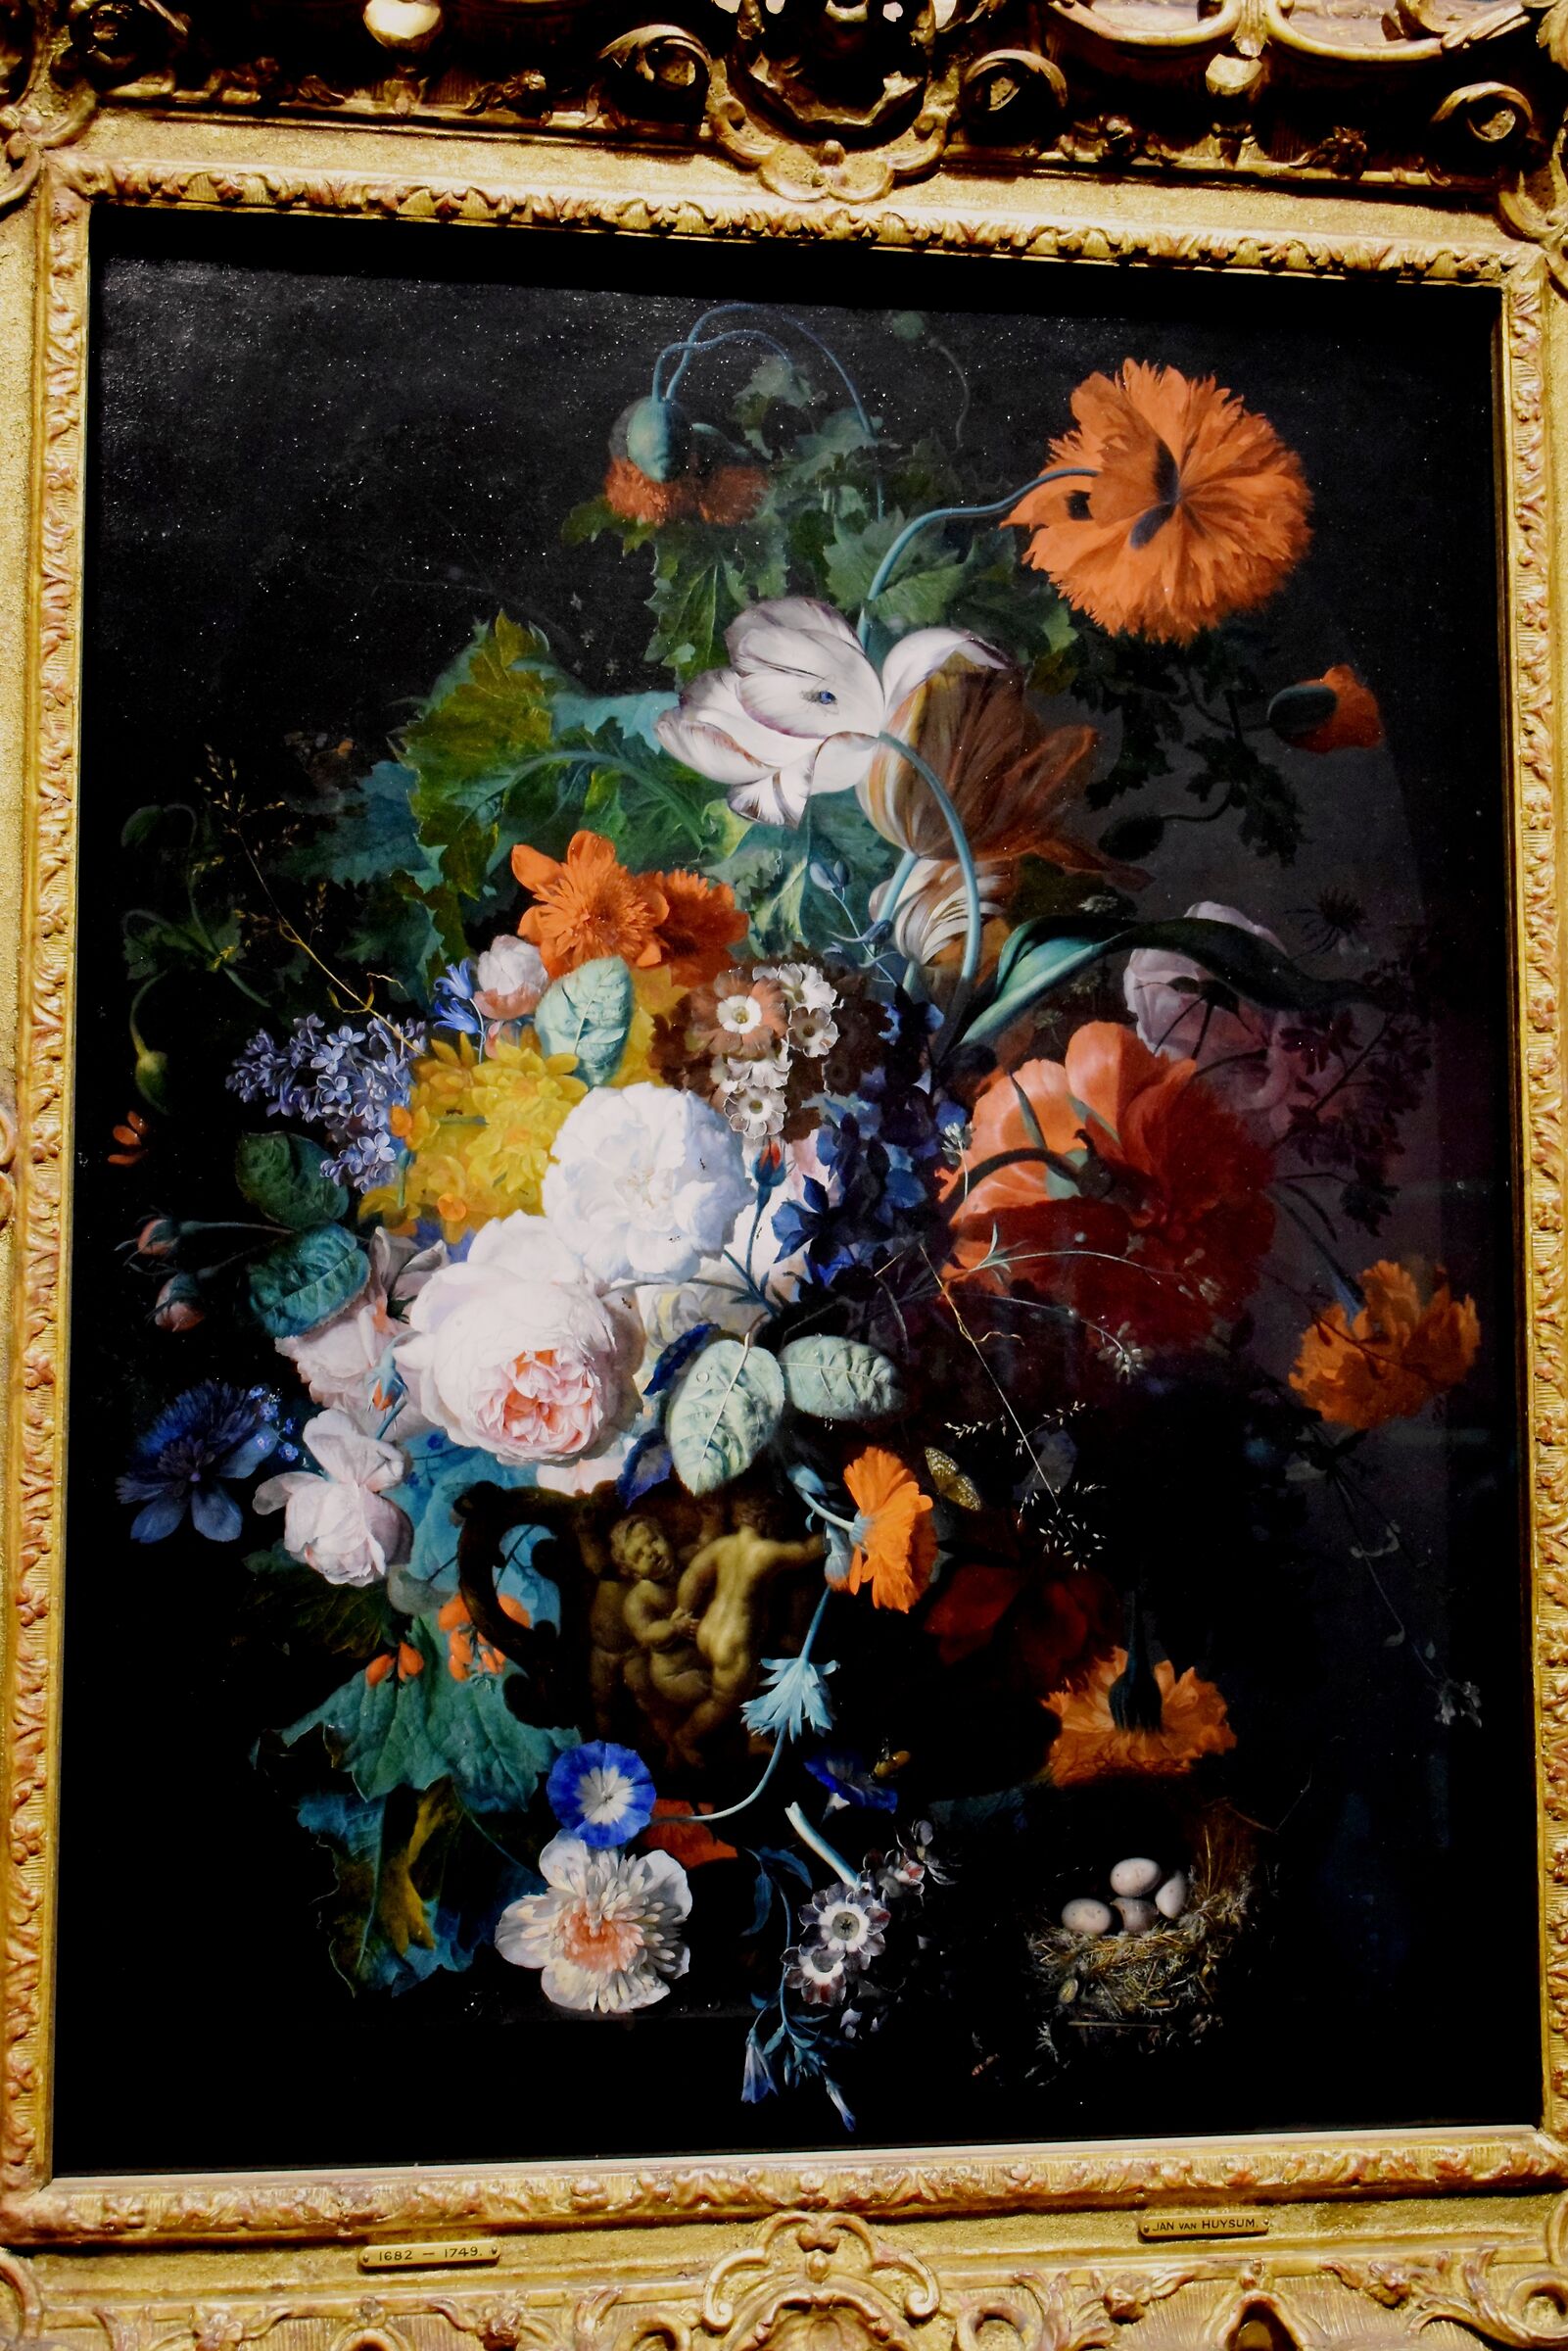 Scottish Gallery - Jan Van Huysum "Flowers Still Life"...